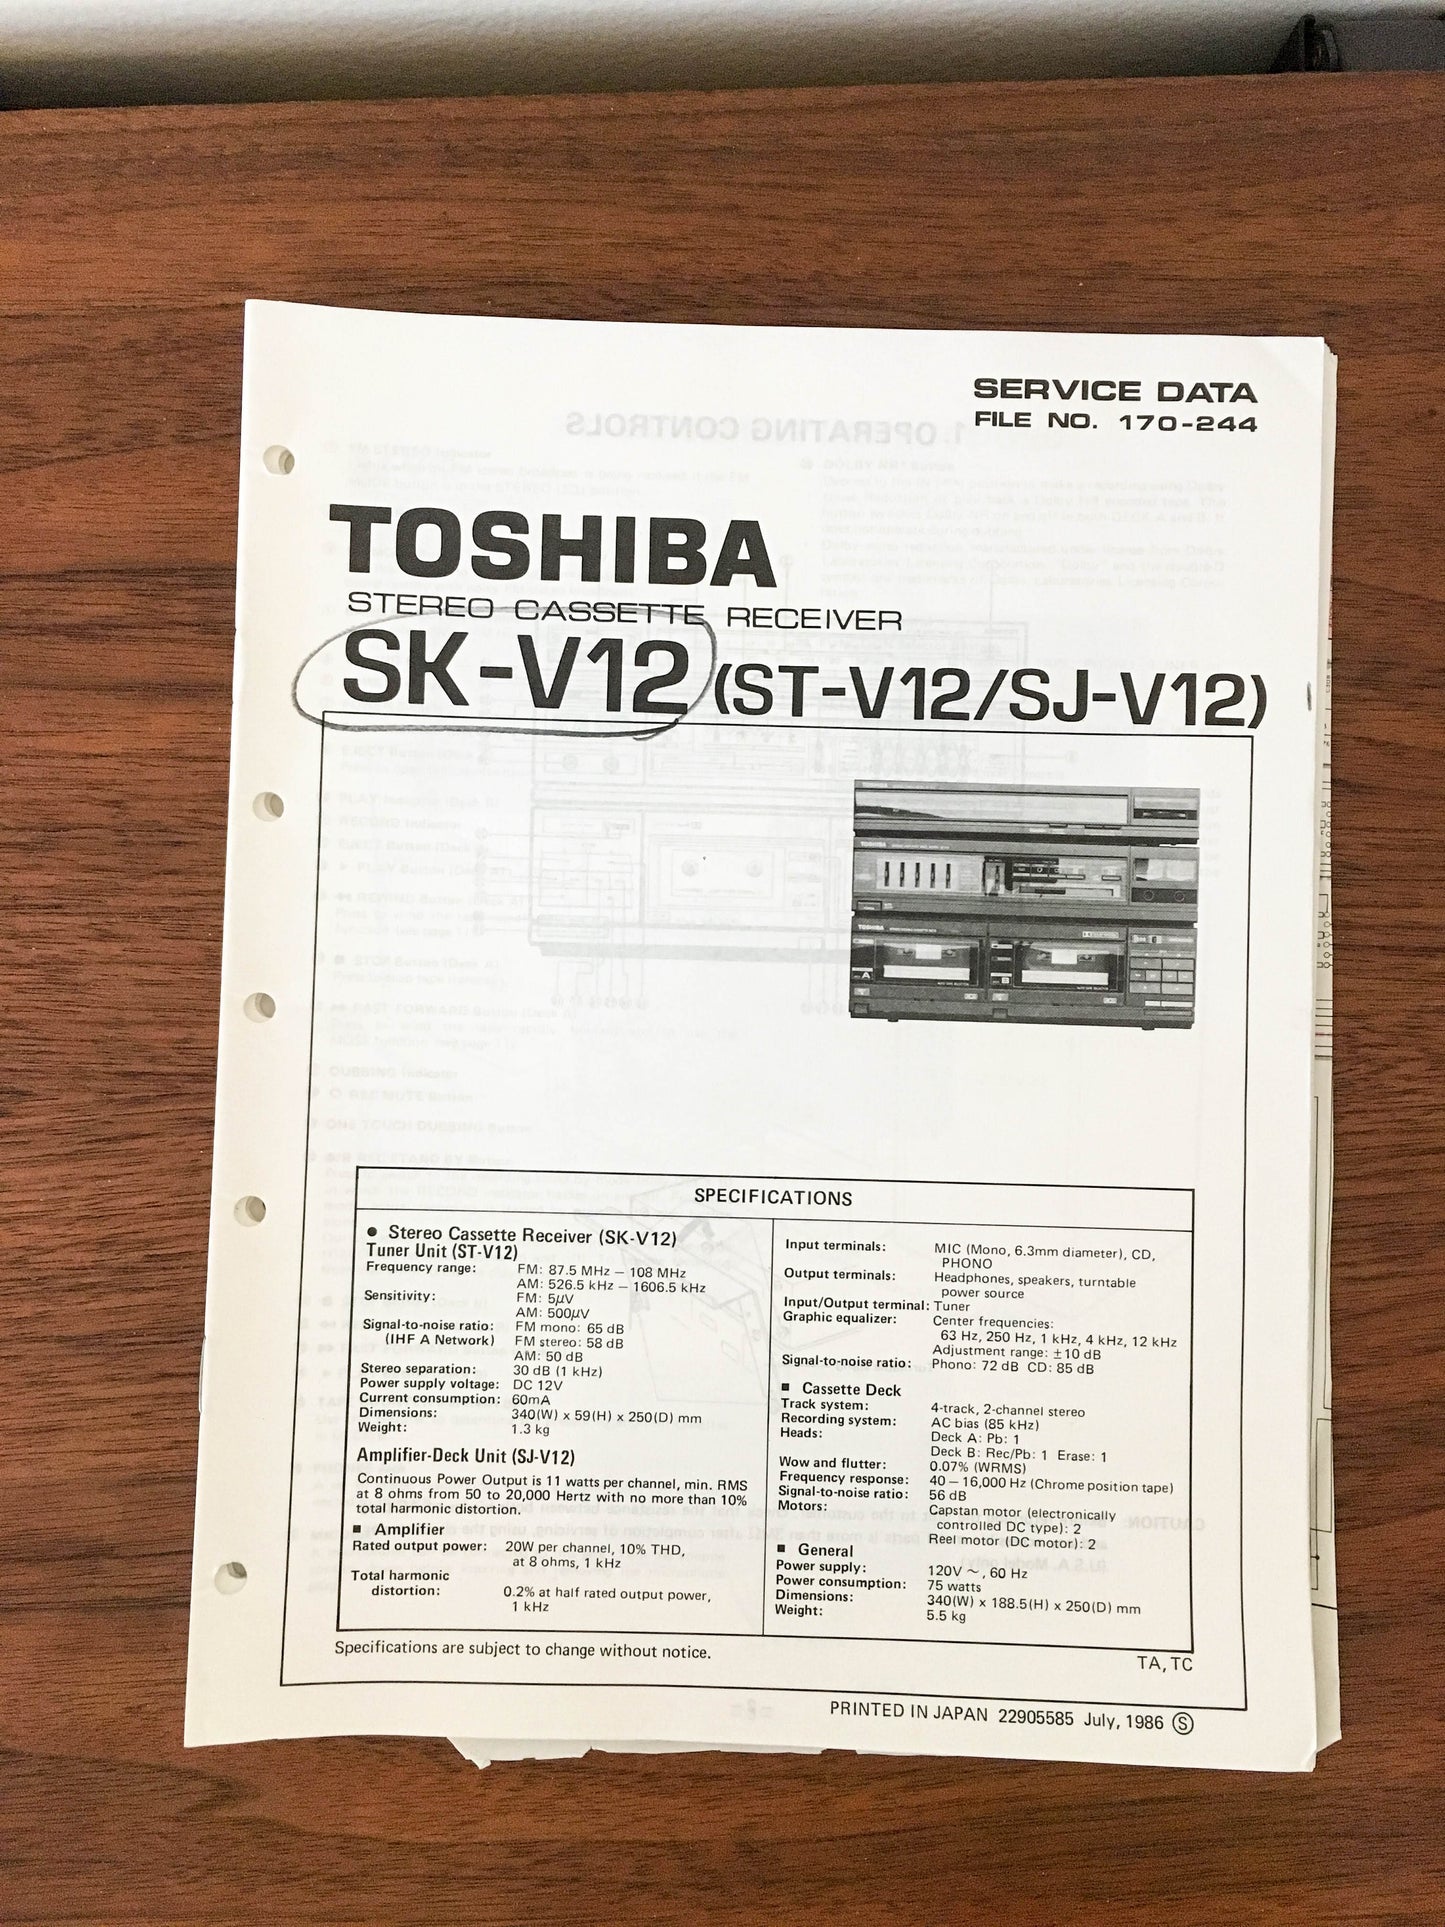 Toshiba SK-V12 ST-V12 SJ-V12 Receiver Service Manual *Original*